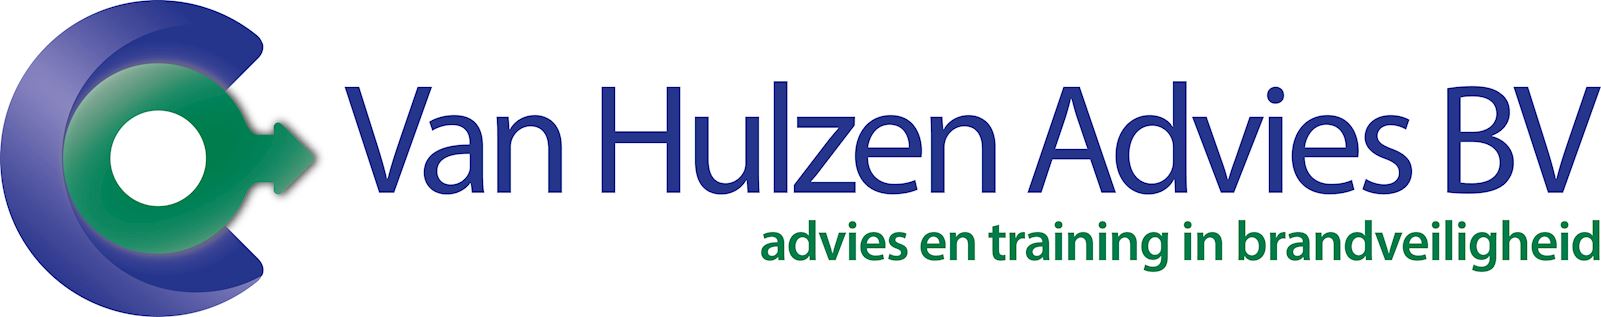 Logo Van Hulzen Advies BV